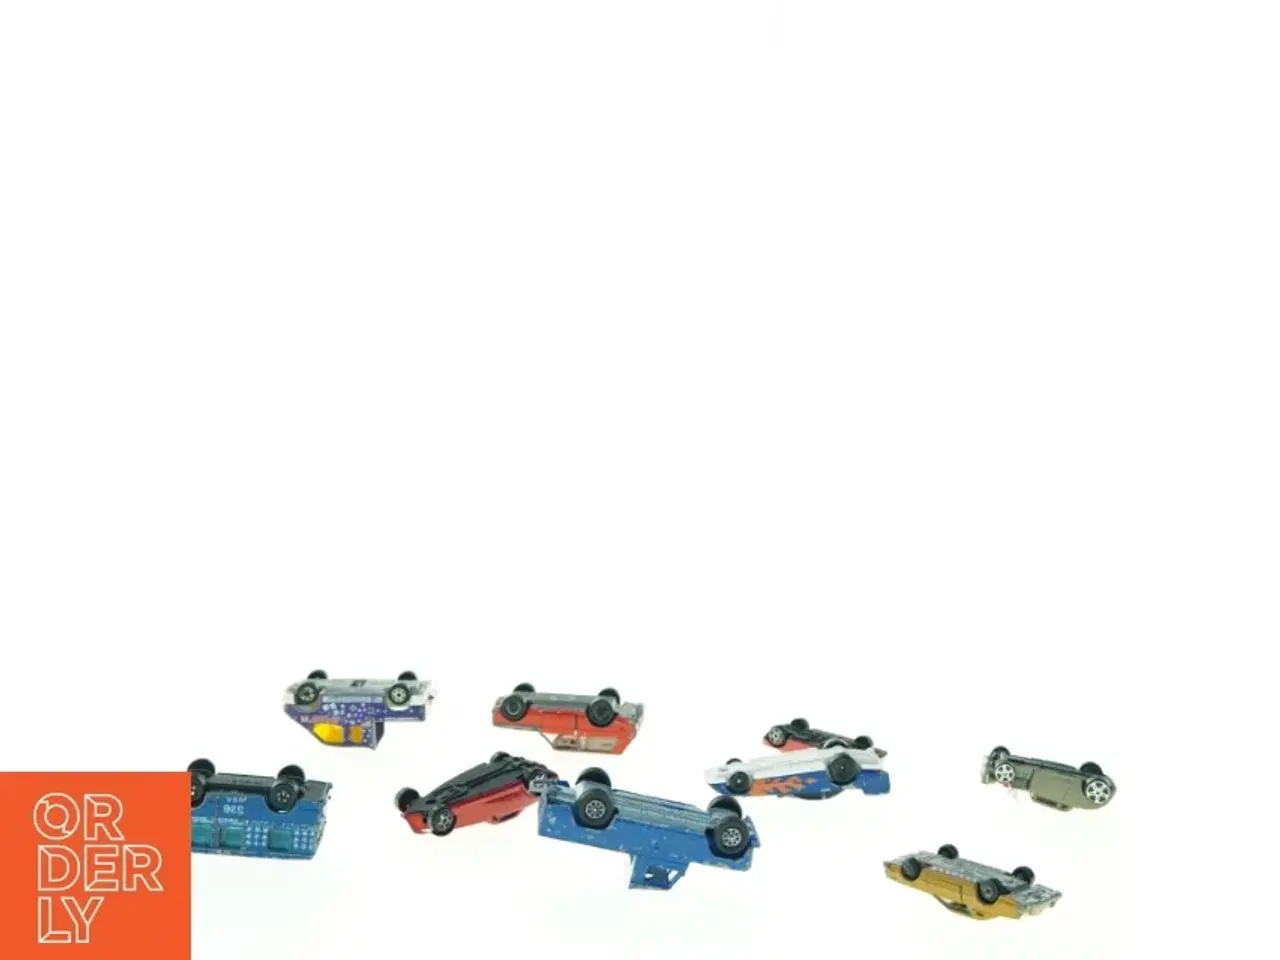 Billede 2 - Samling af Matchbox biler fra Matchbox (str. 10 x 3 cm)